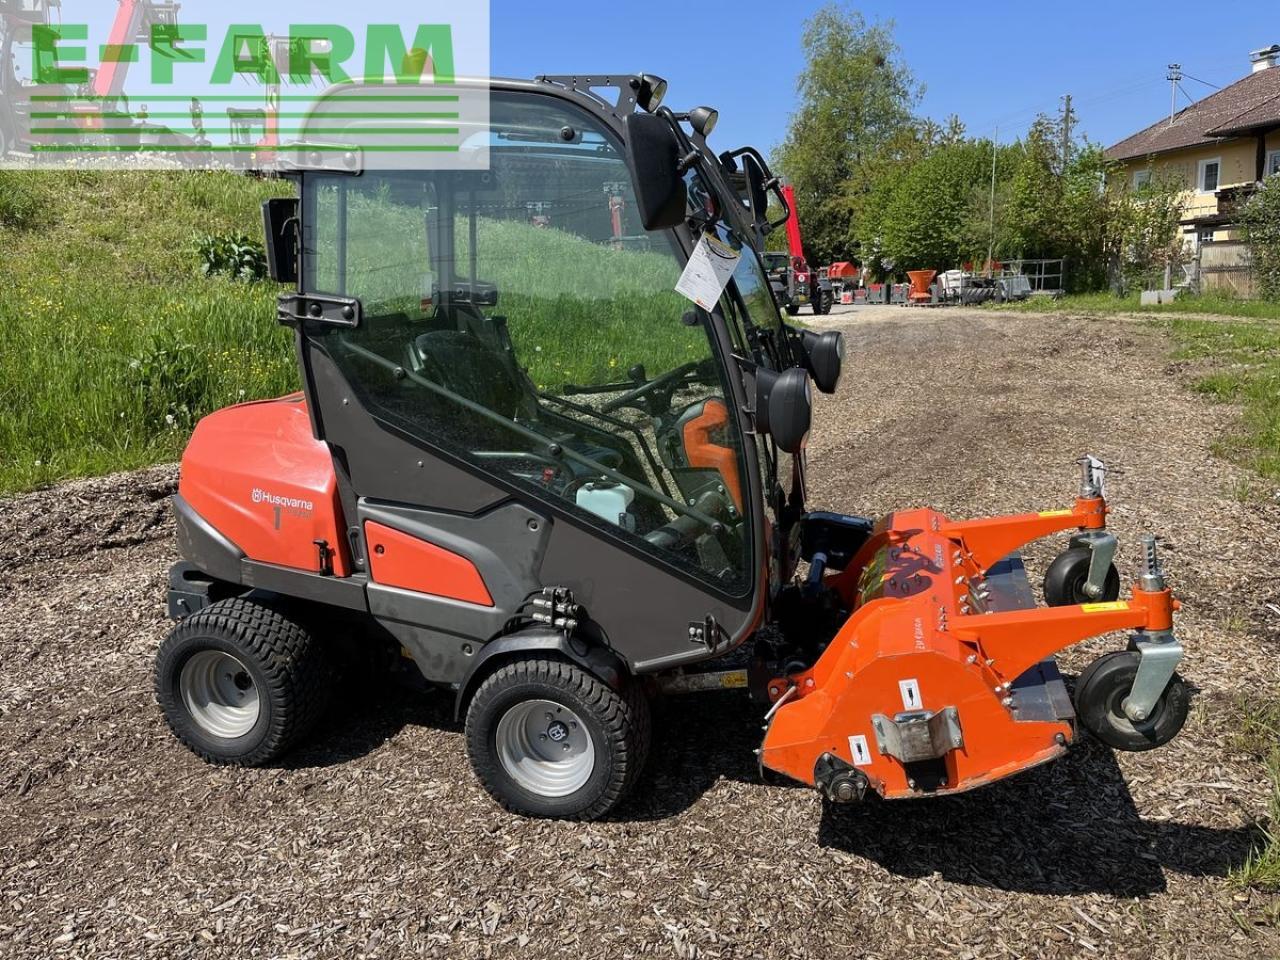 Farm tractor Husqvarna p525 d mit kabine und schleglmäher: picture 8